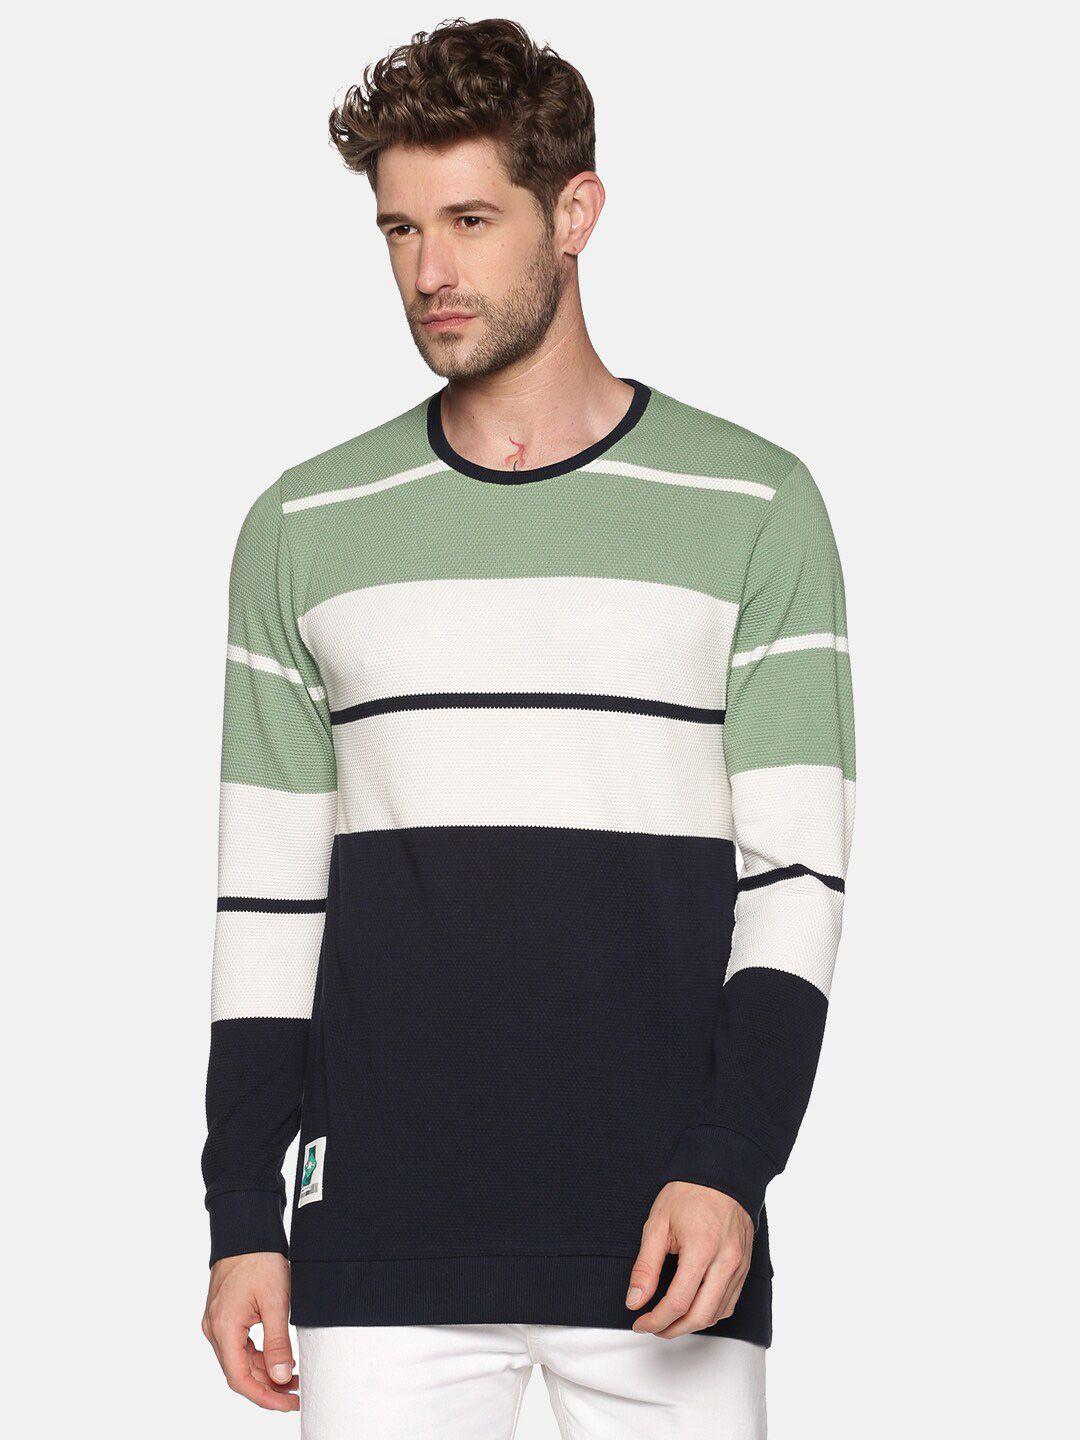 showoff-men-green-&-white-striped-sweatshirt